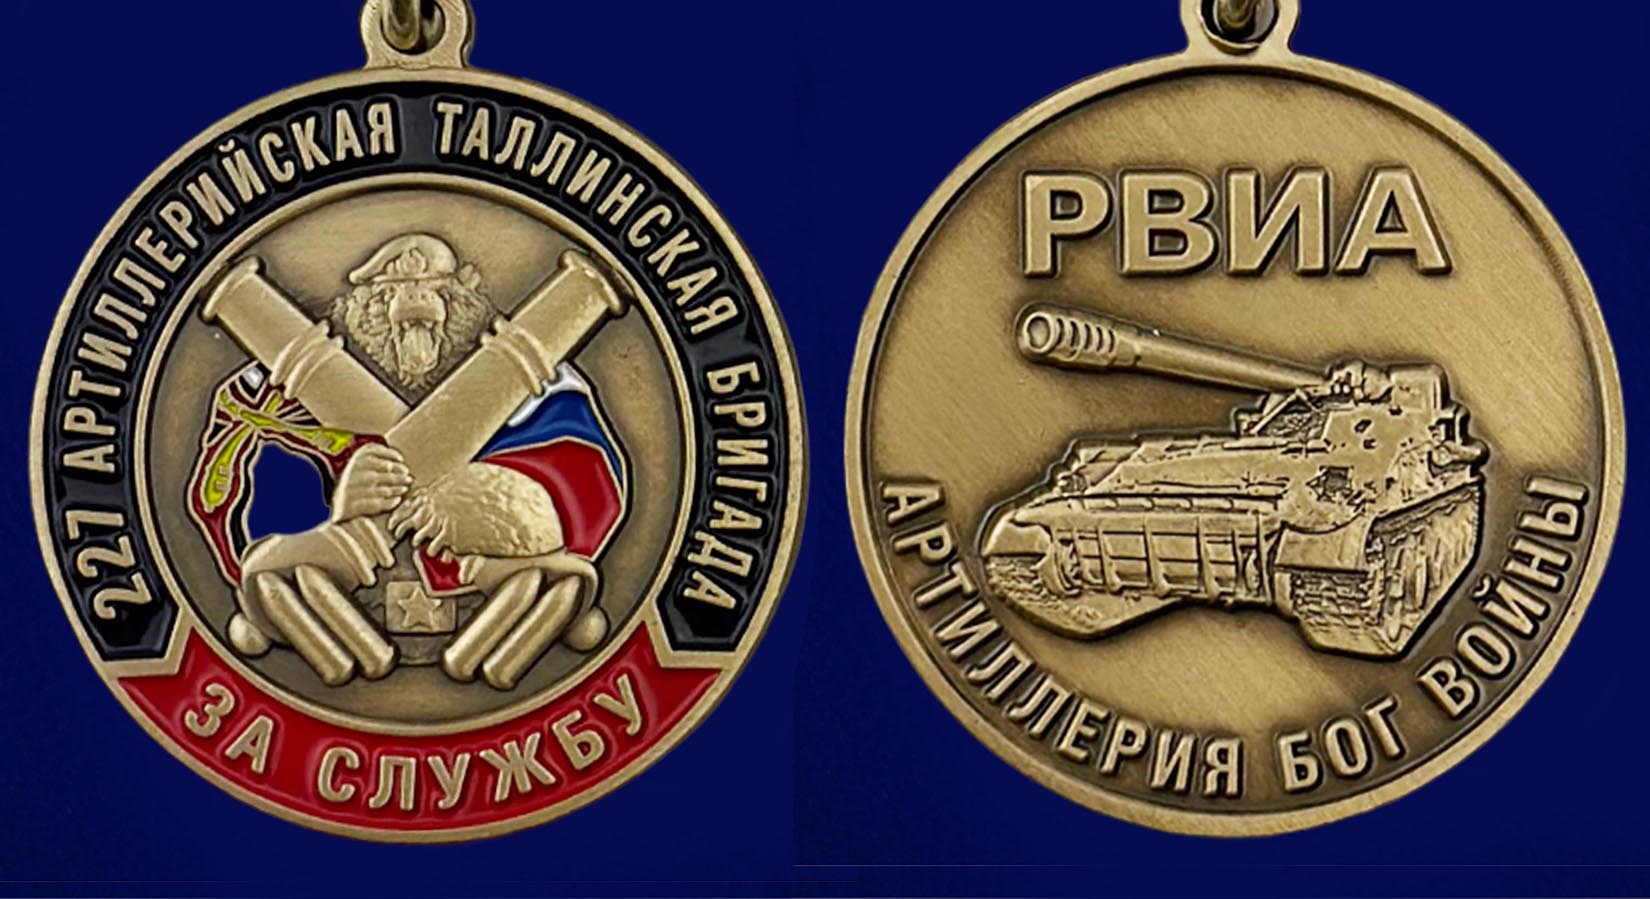 Купить памятную медаль РВиА За службу в 227-ой артиллерийской бригаде выгодно